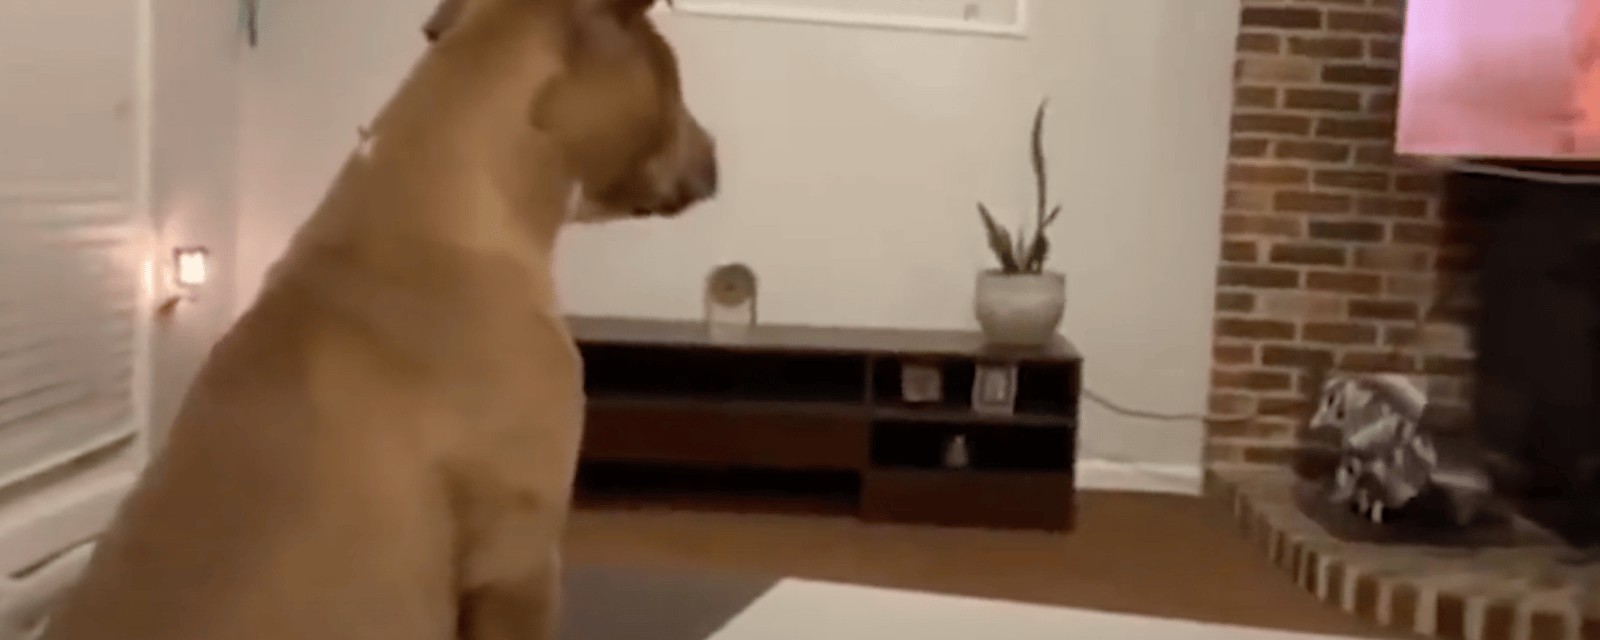 En vidéo: une chienne a le coeur brisé devant un dessin animé